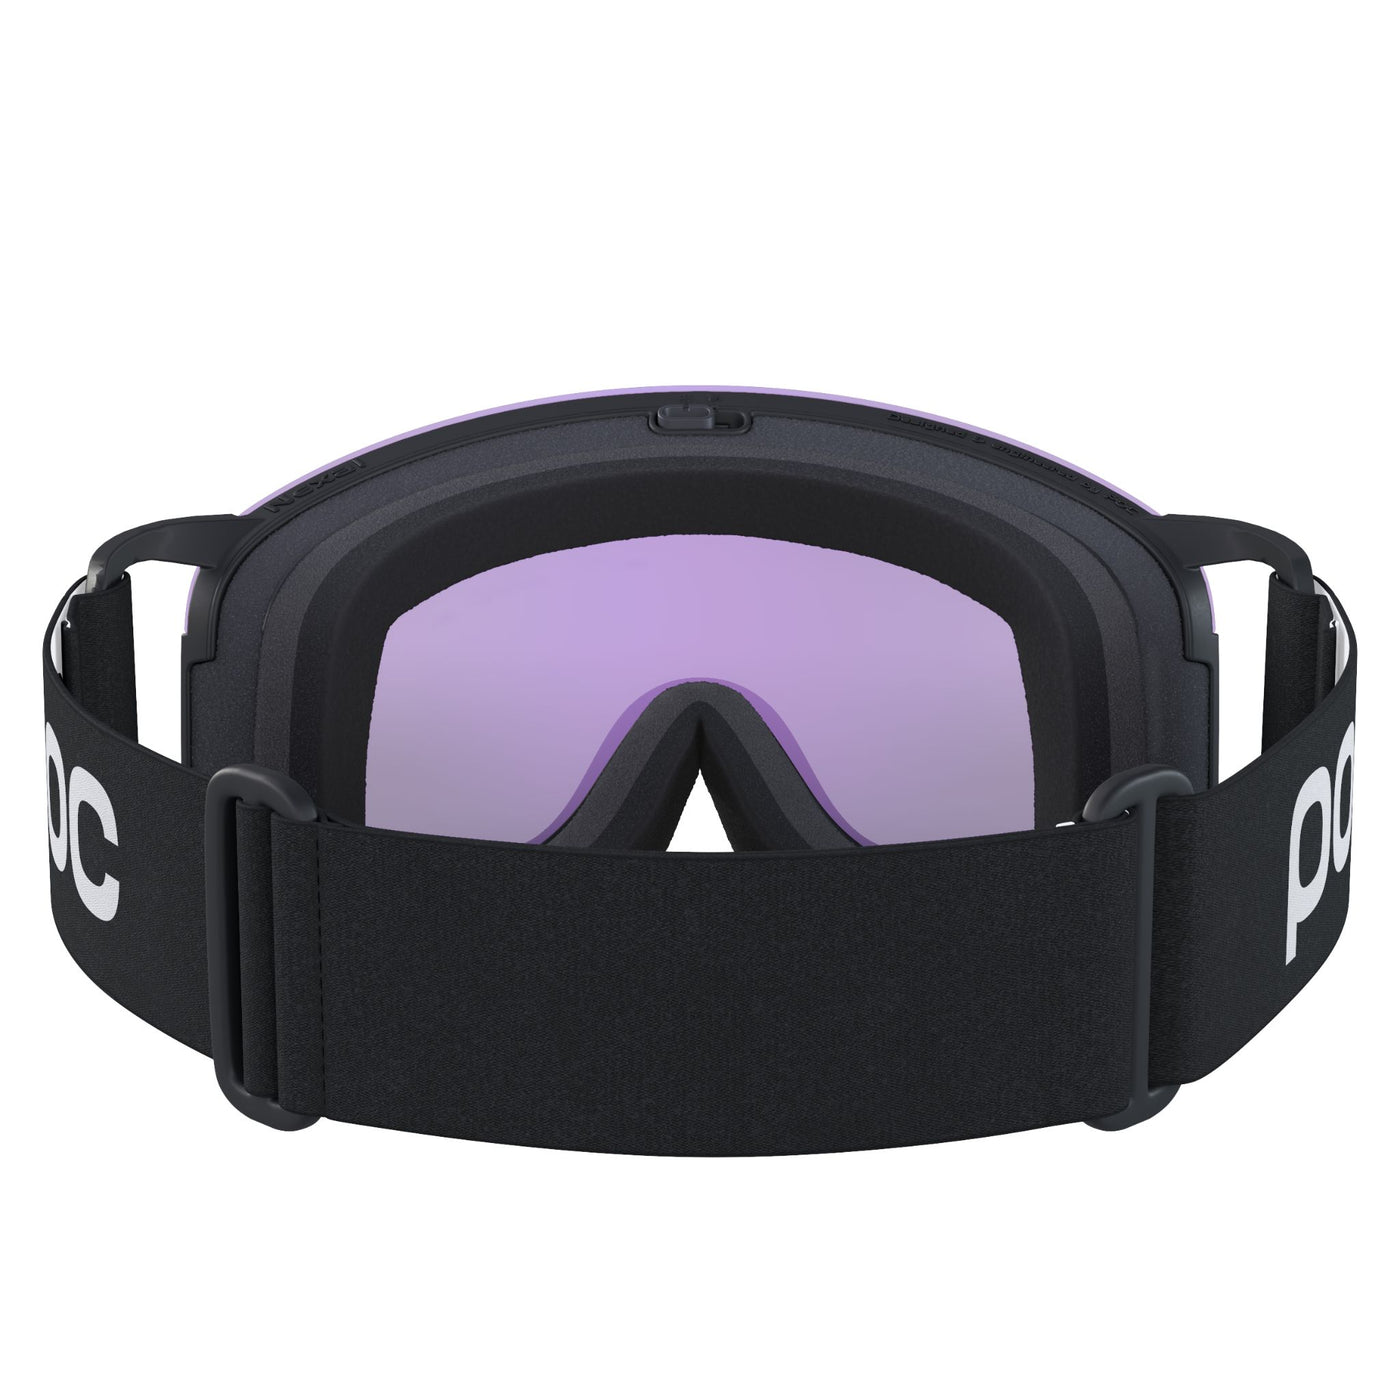 POC Nexal Clarity Ski and Snowboard Goggles GOGGLES POC   